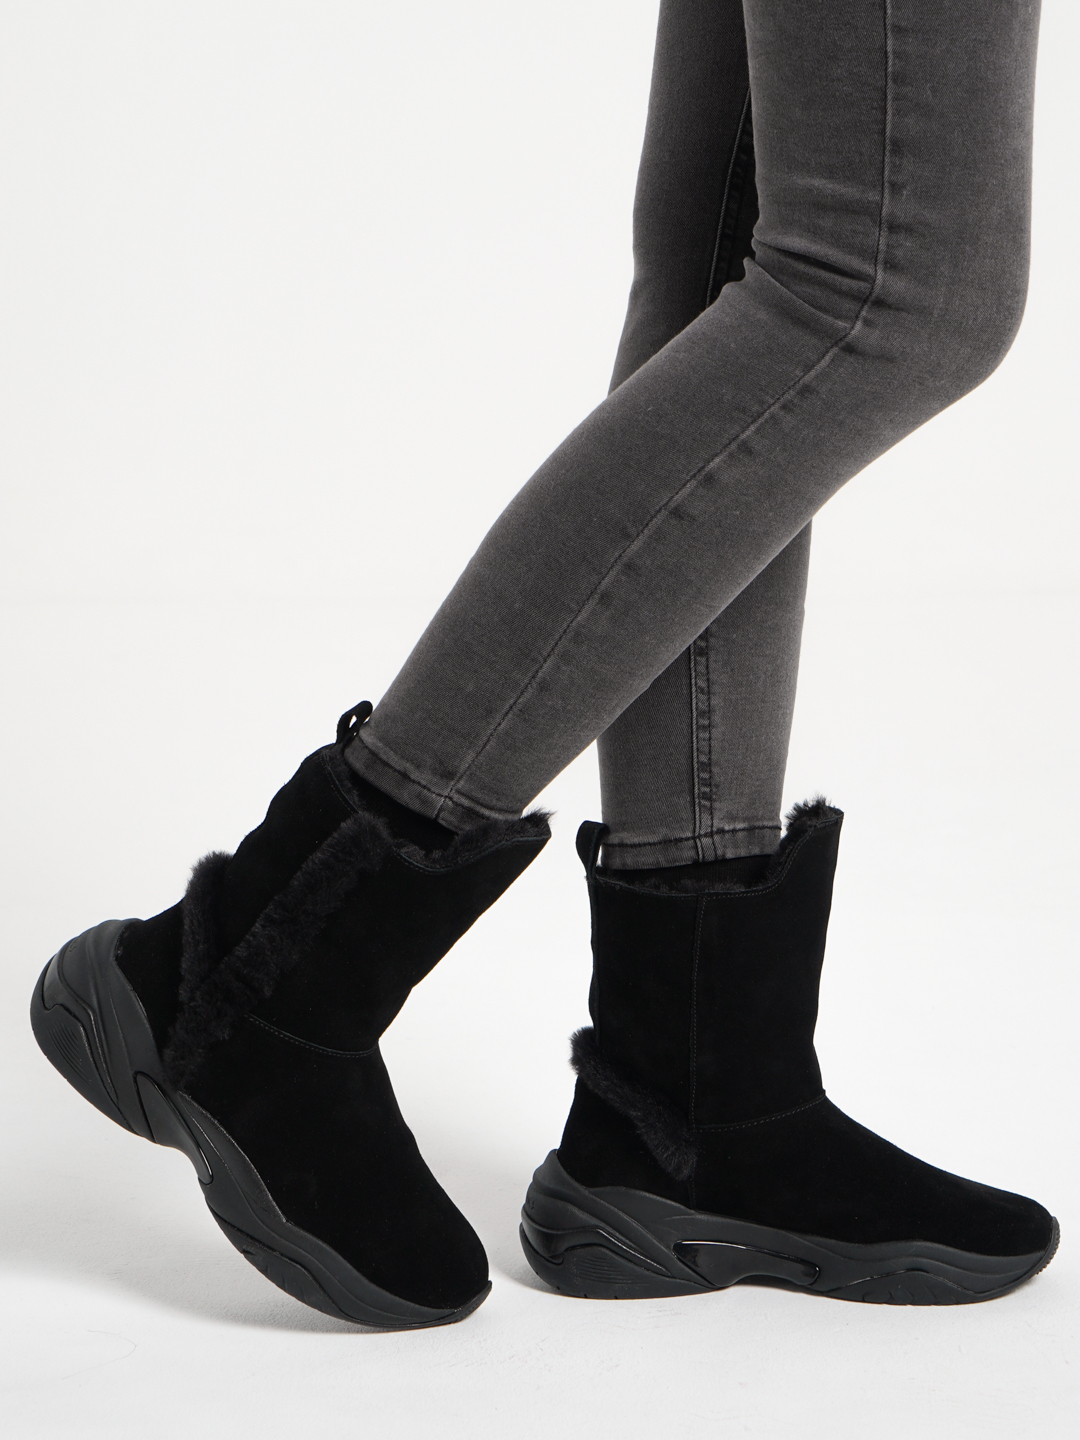 Ботинки женские зимние, Tamaris купить по цене 3692 ₽ в интернет-магазинеKazanExpress